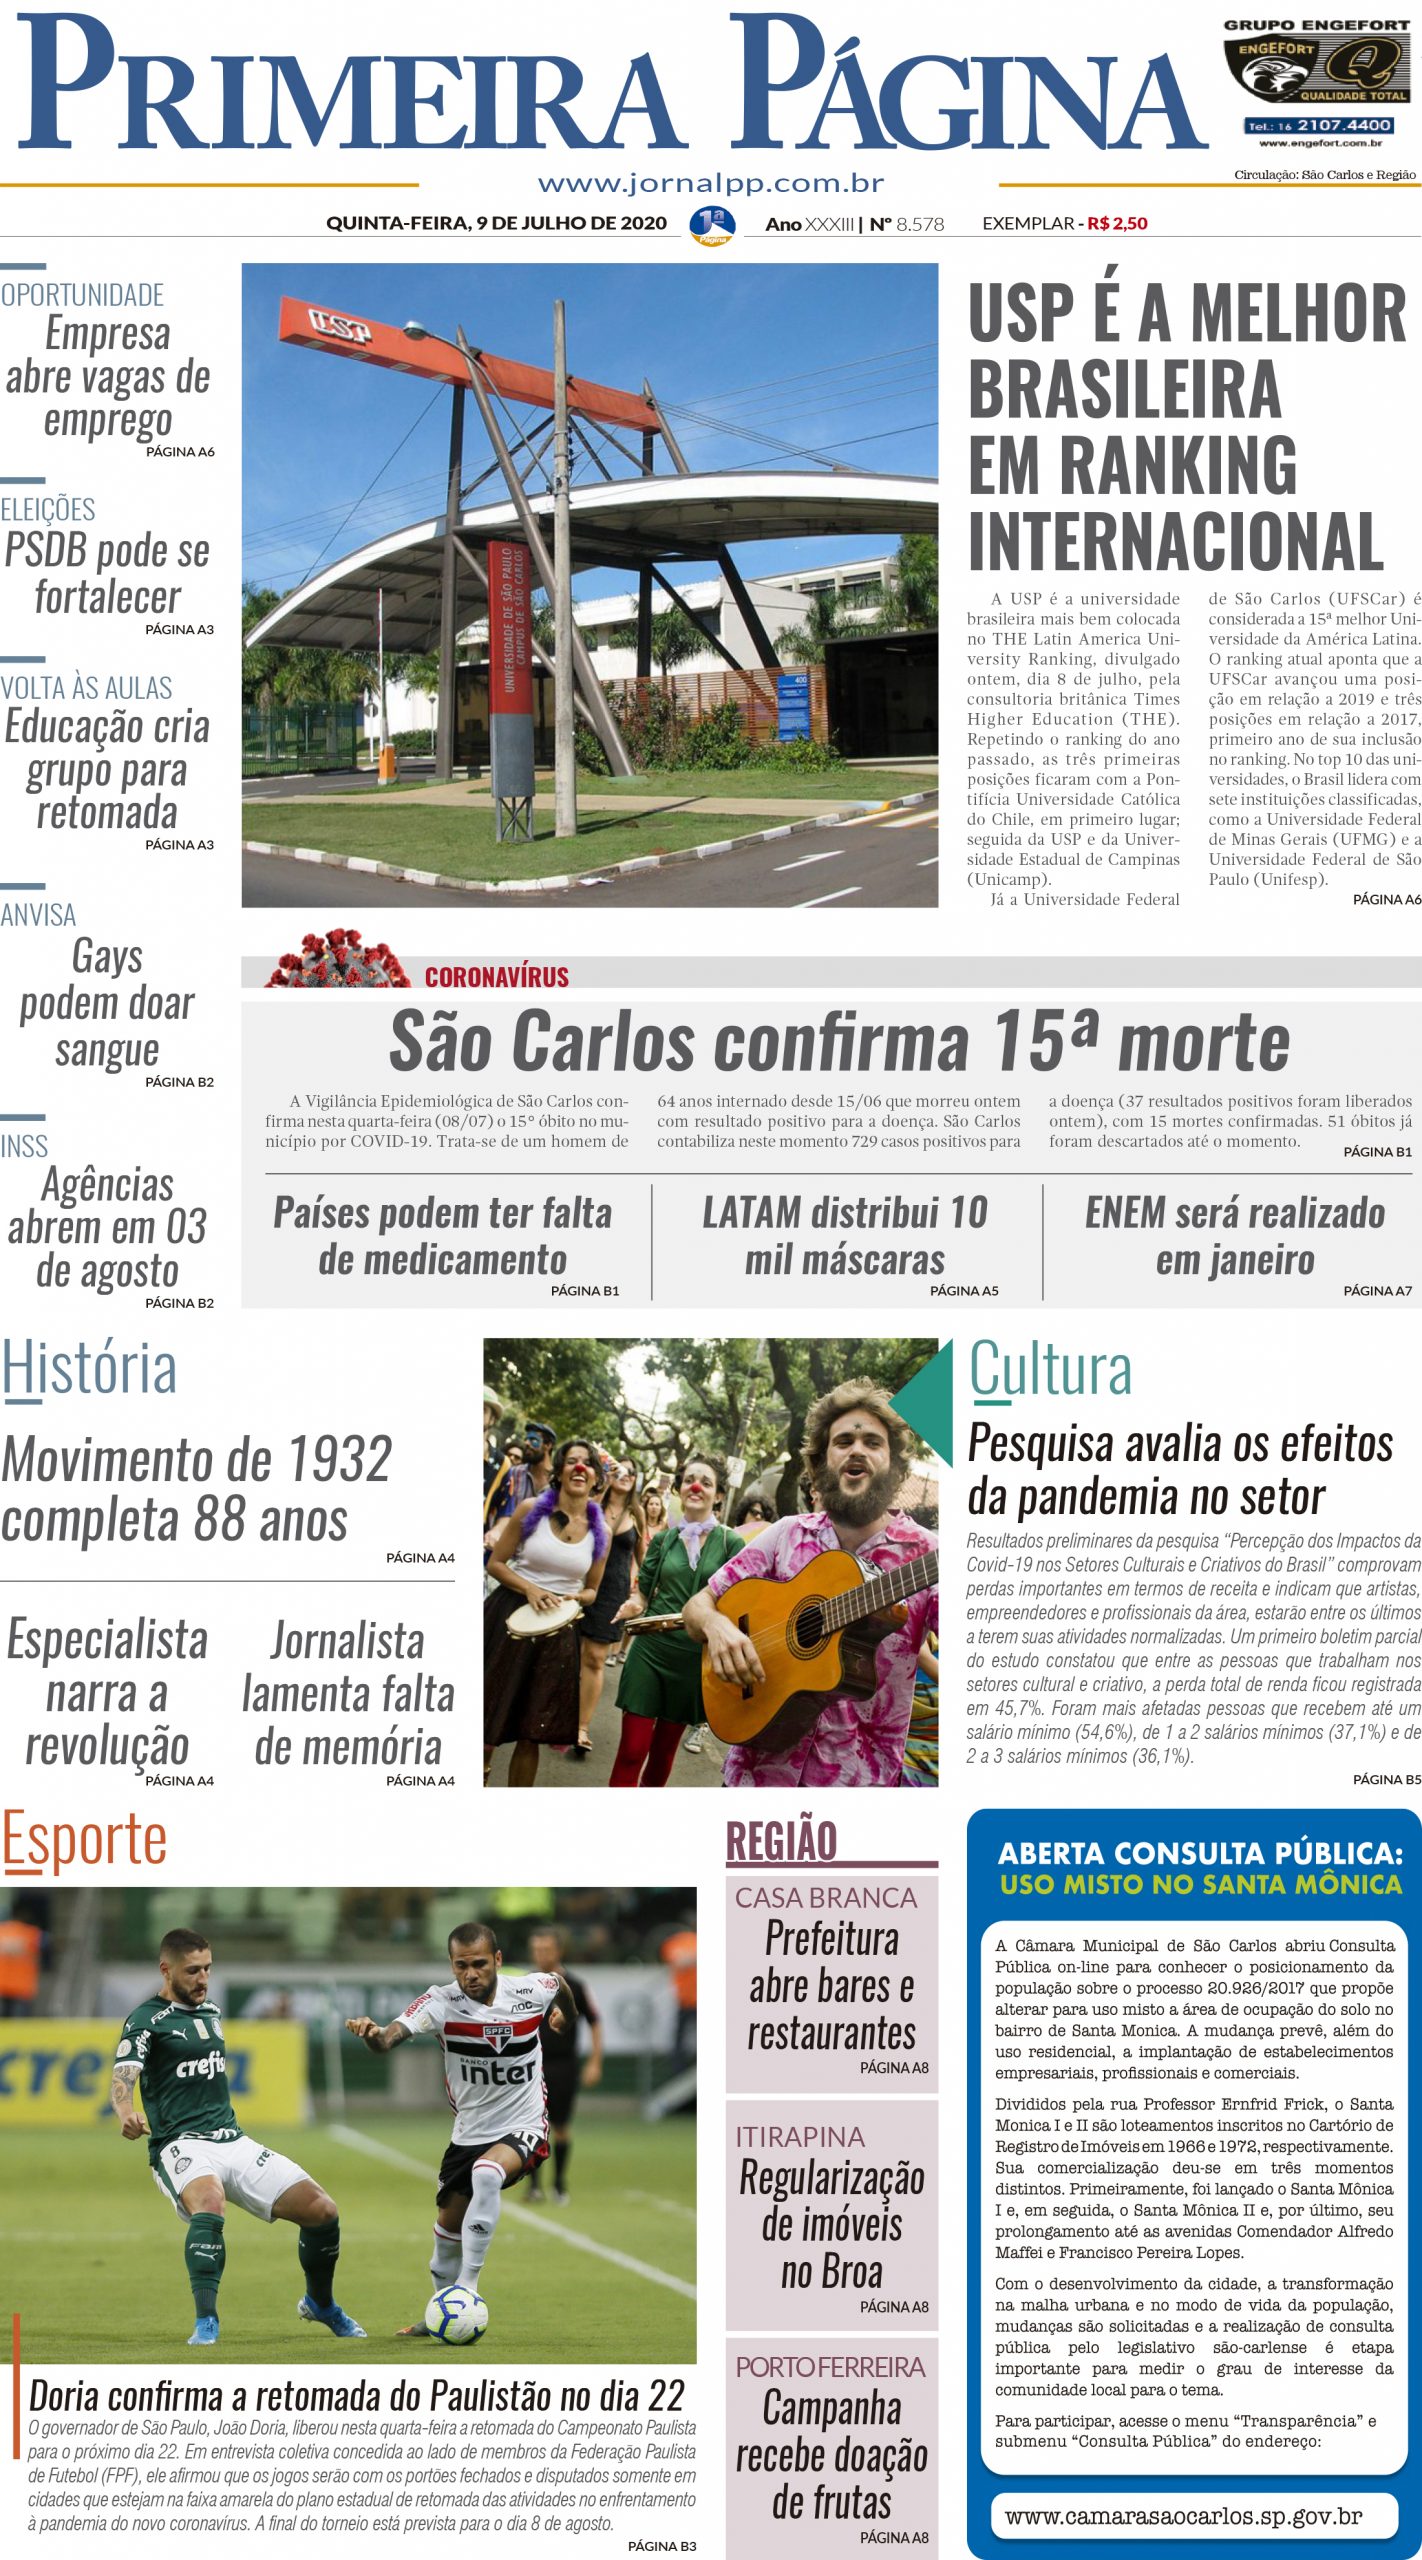 Capa do Impresso – 09/07/2020